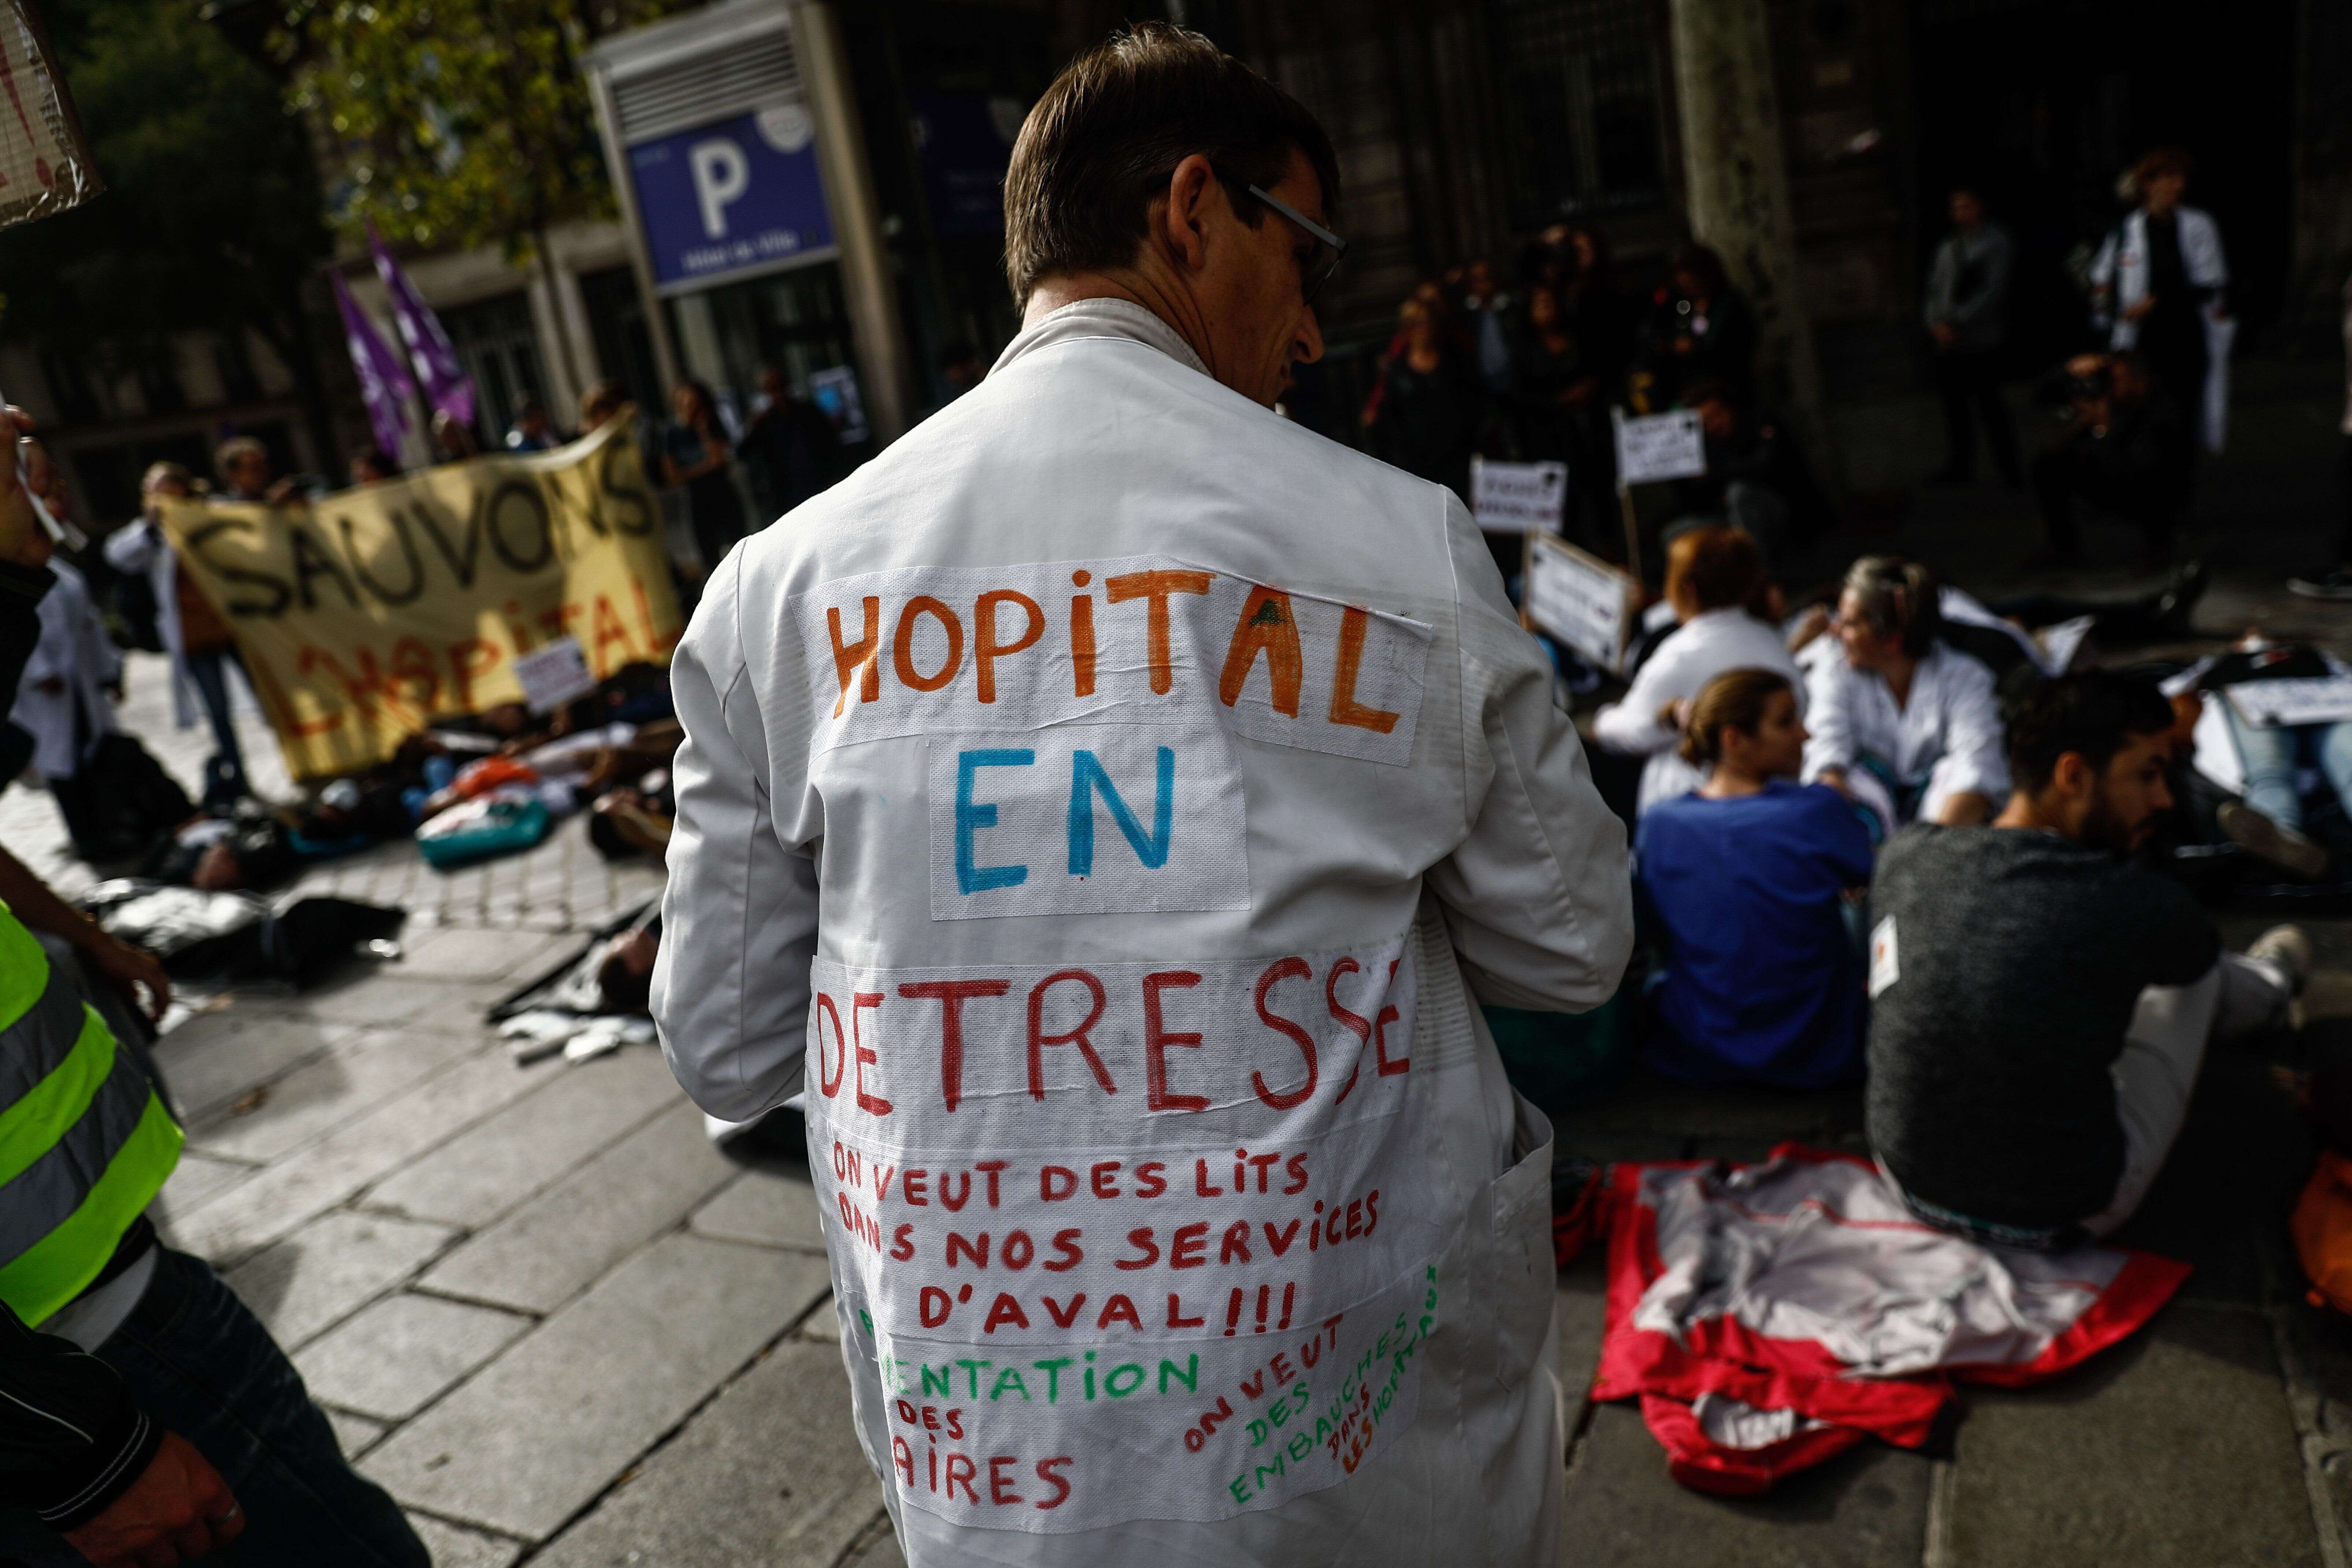 Les personnels soignants dénoncent lors d'une manifestation le manque de moyens et de lits face au nombre croissant d'admissions, et réclament de meilleures rémunérations, à Paris, le 26 septembre 2019.